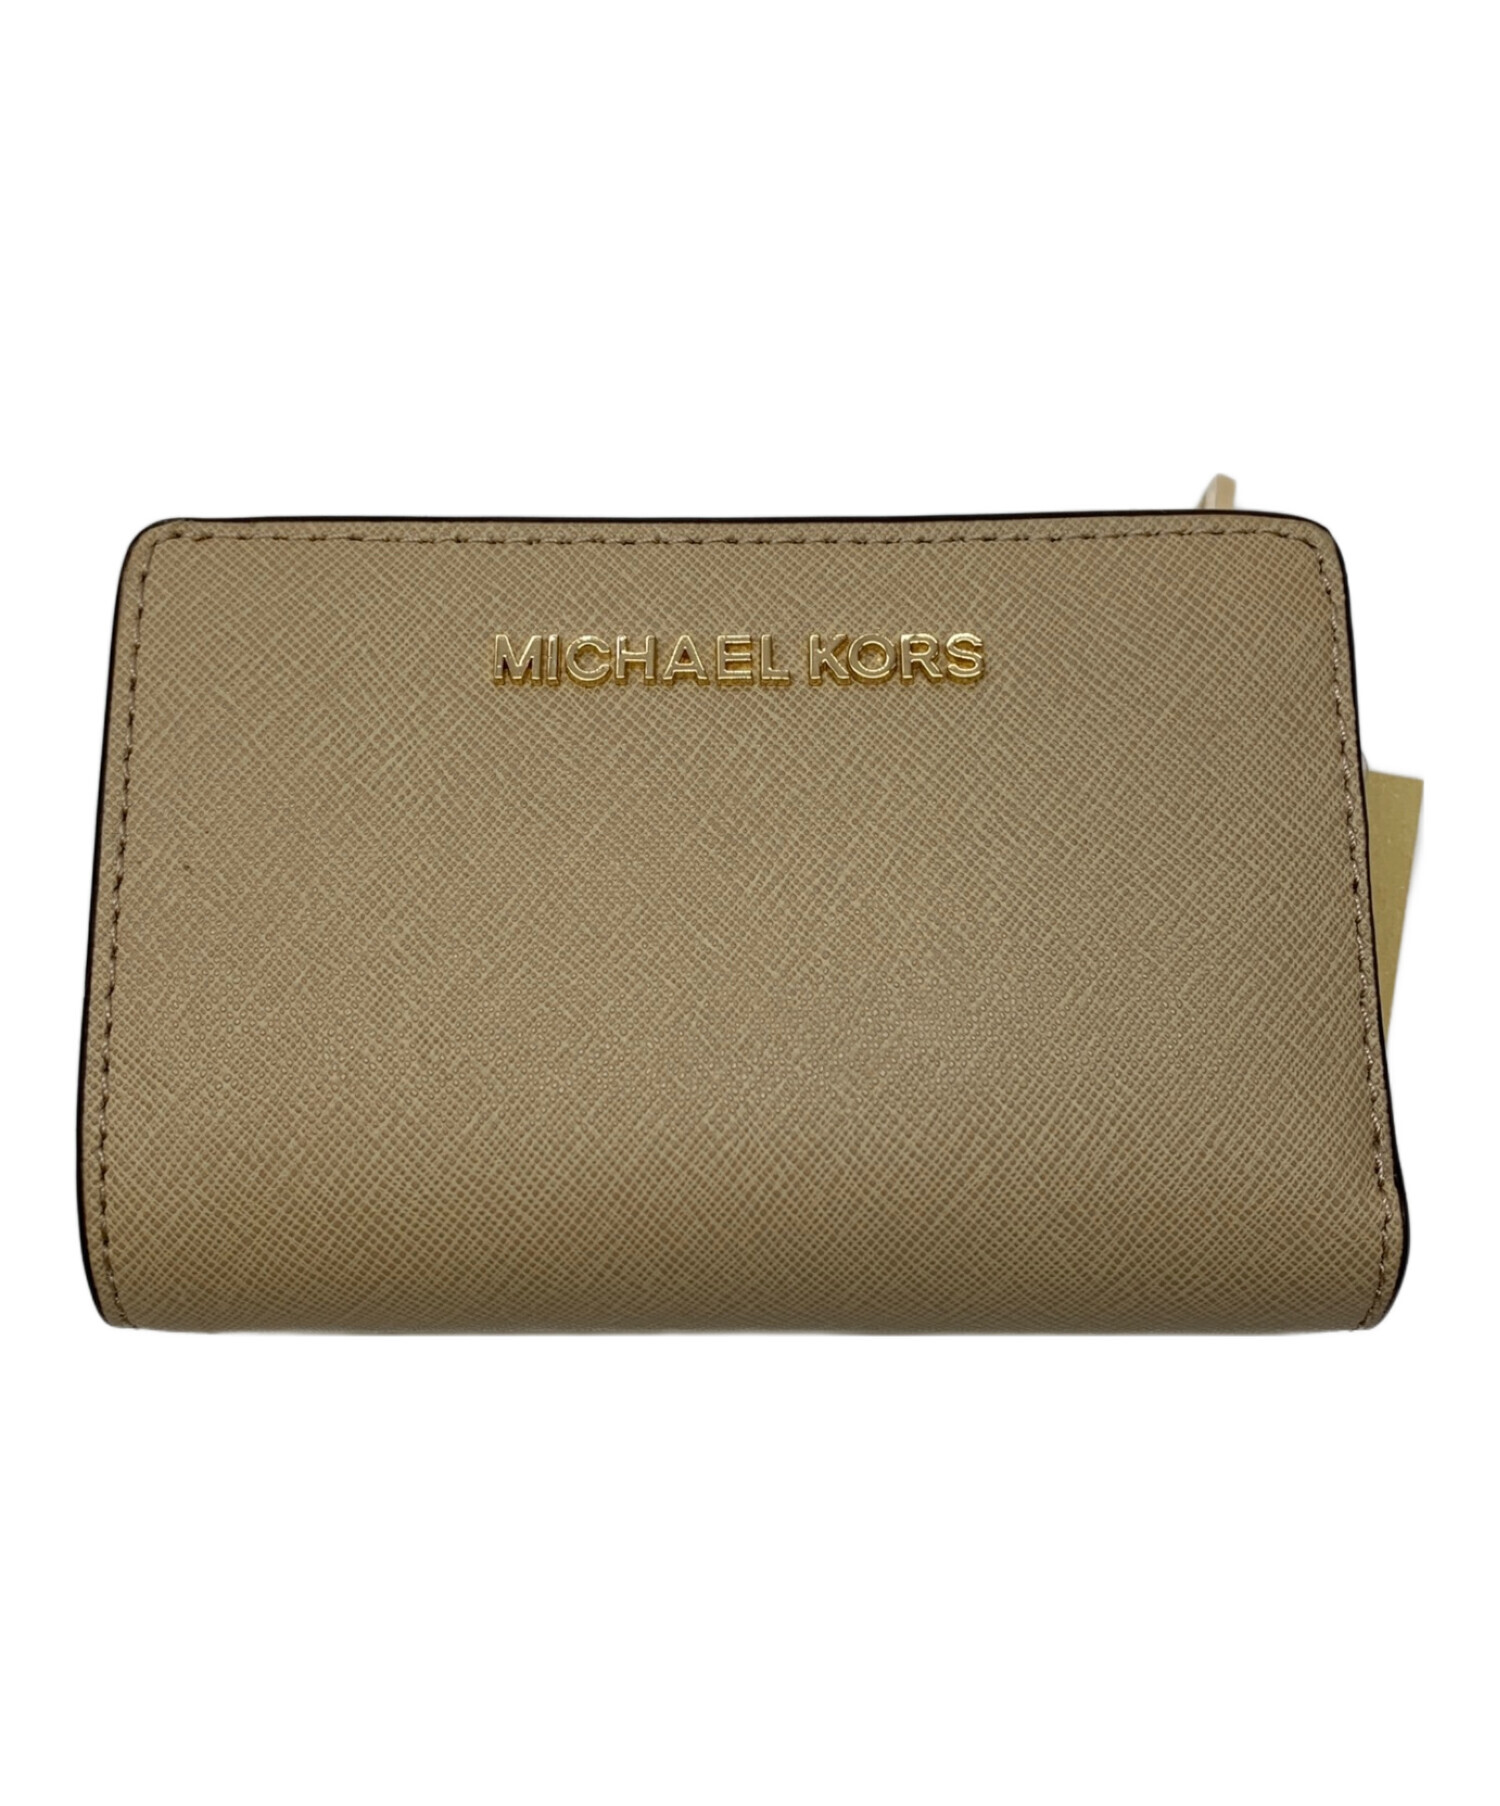 【入荷済み】新品未使用 マイケルコース 二つ折り財布 財布